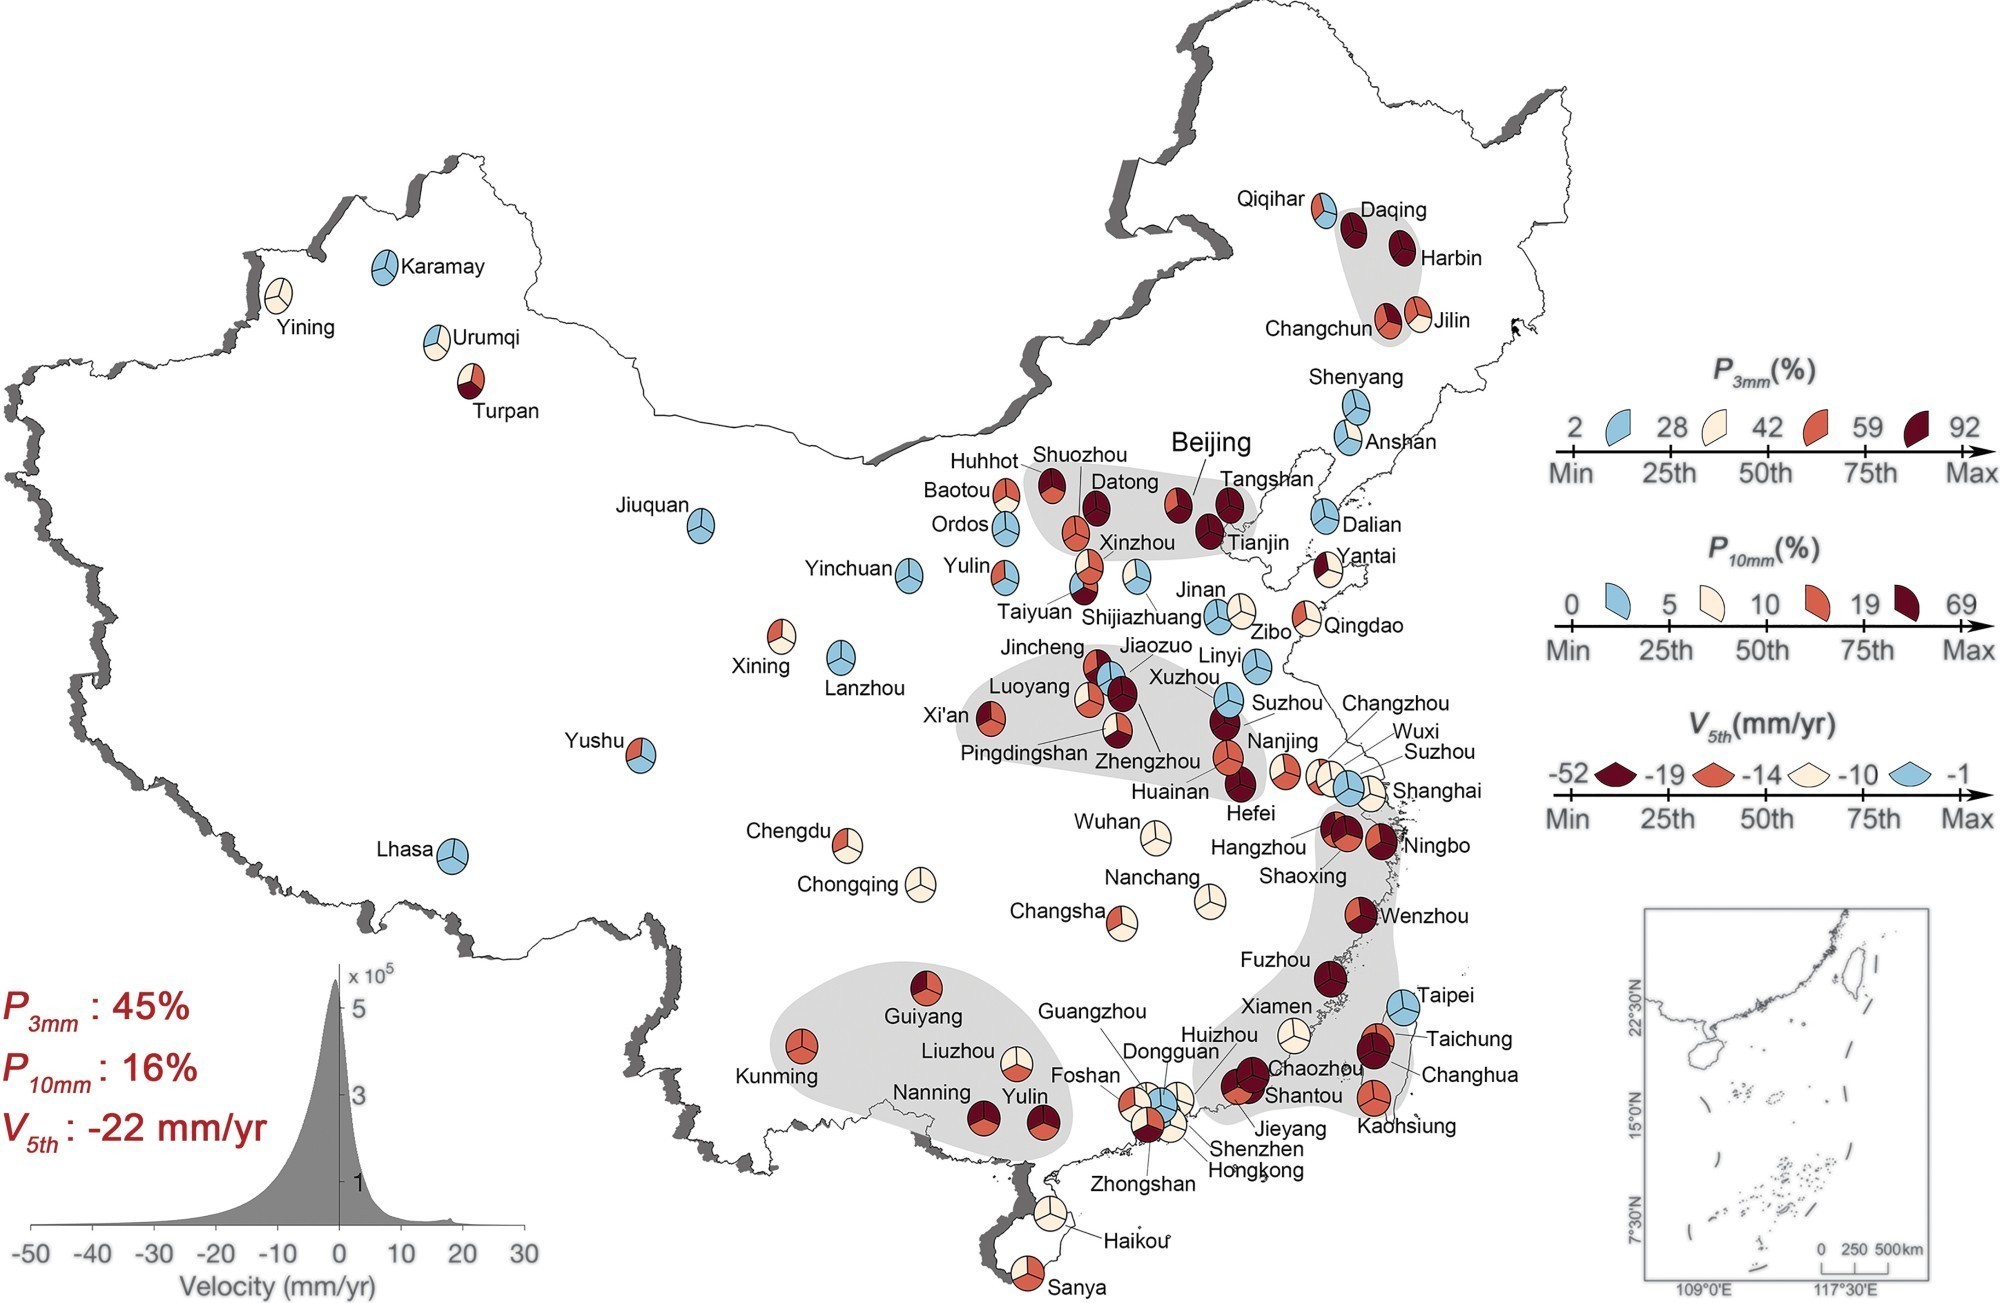 Le modèle d’affaissement urbain en Chine révèle que près de la moitié des grandes villes s’enfoncent à un rythme alarmant. En effet, 45% des zones analysées subissent un affaissement supérieur à 3 mm par an.